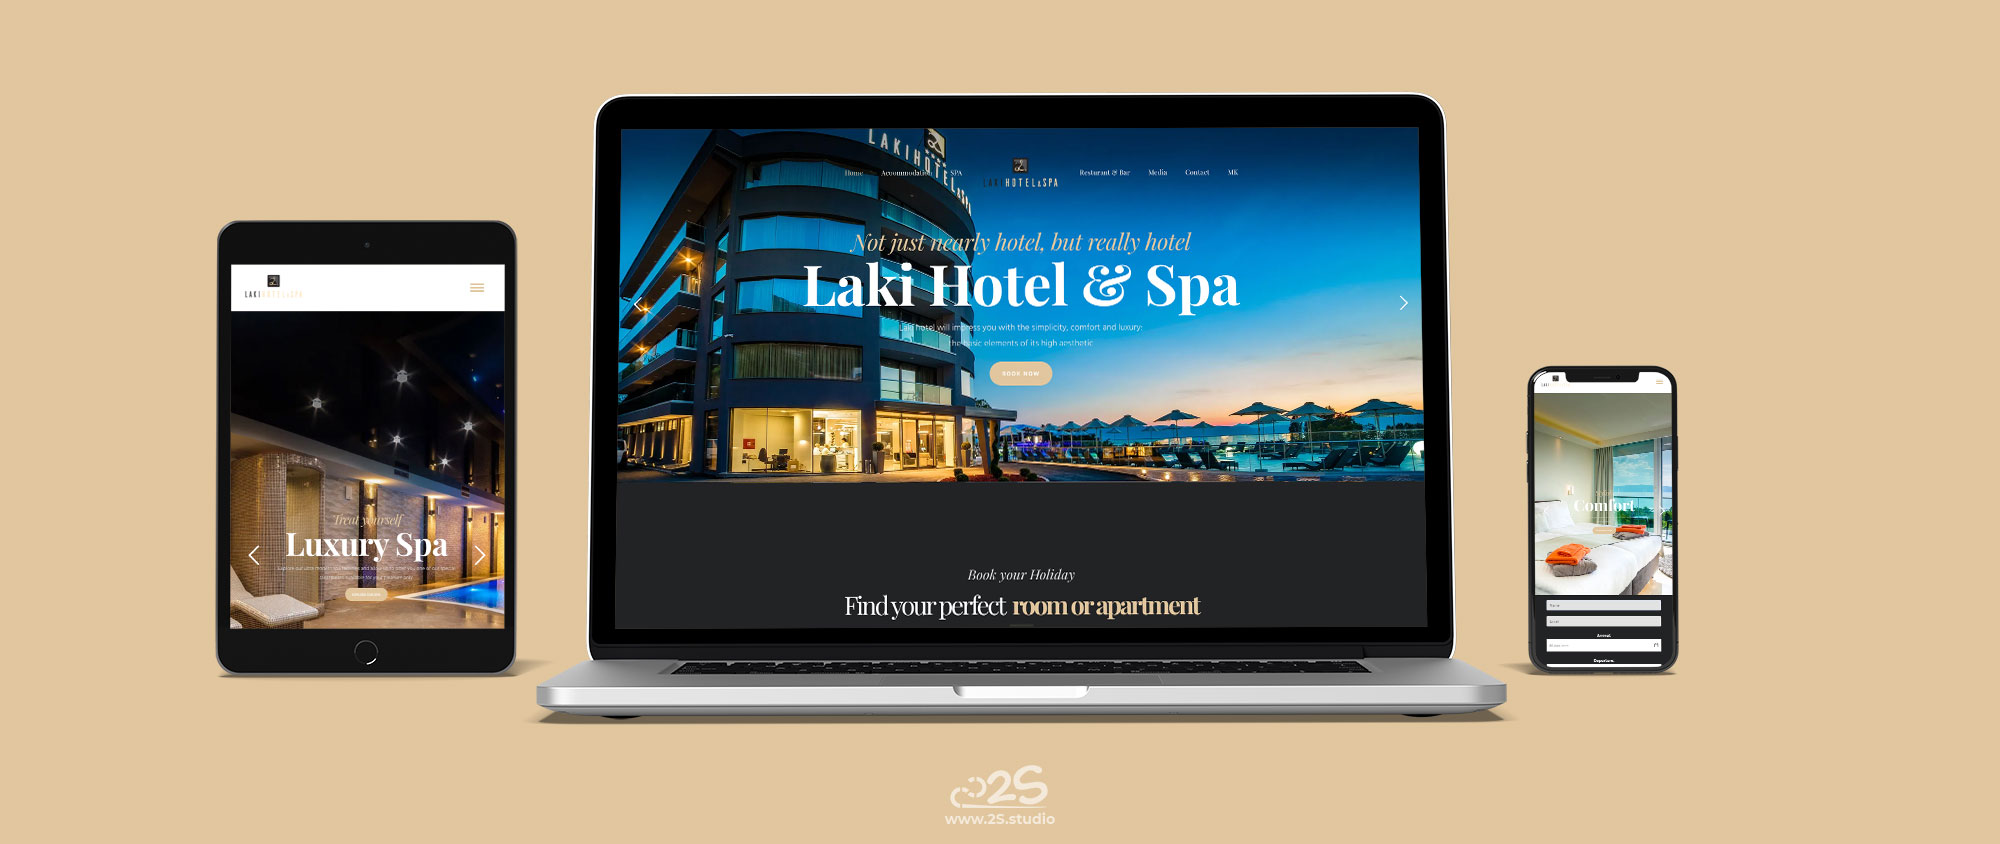 Laki Hotel & Spa – Web Design – 2017